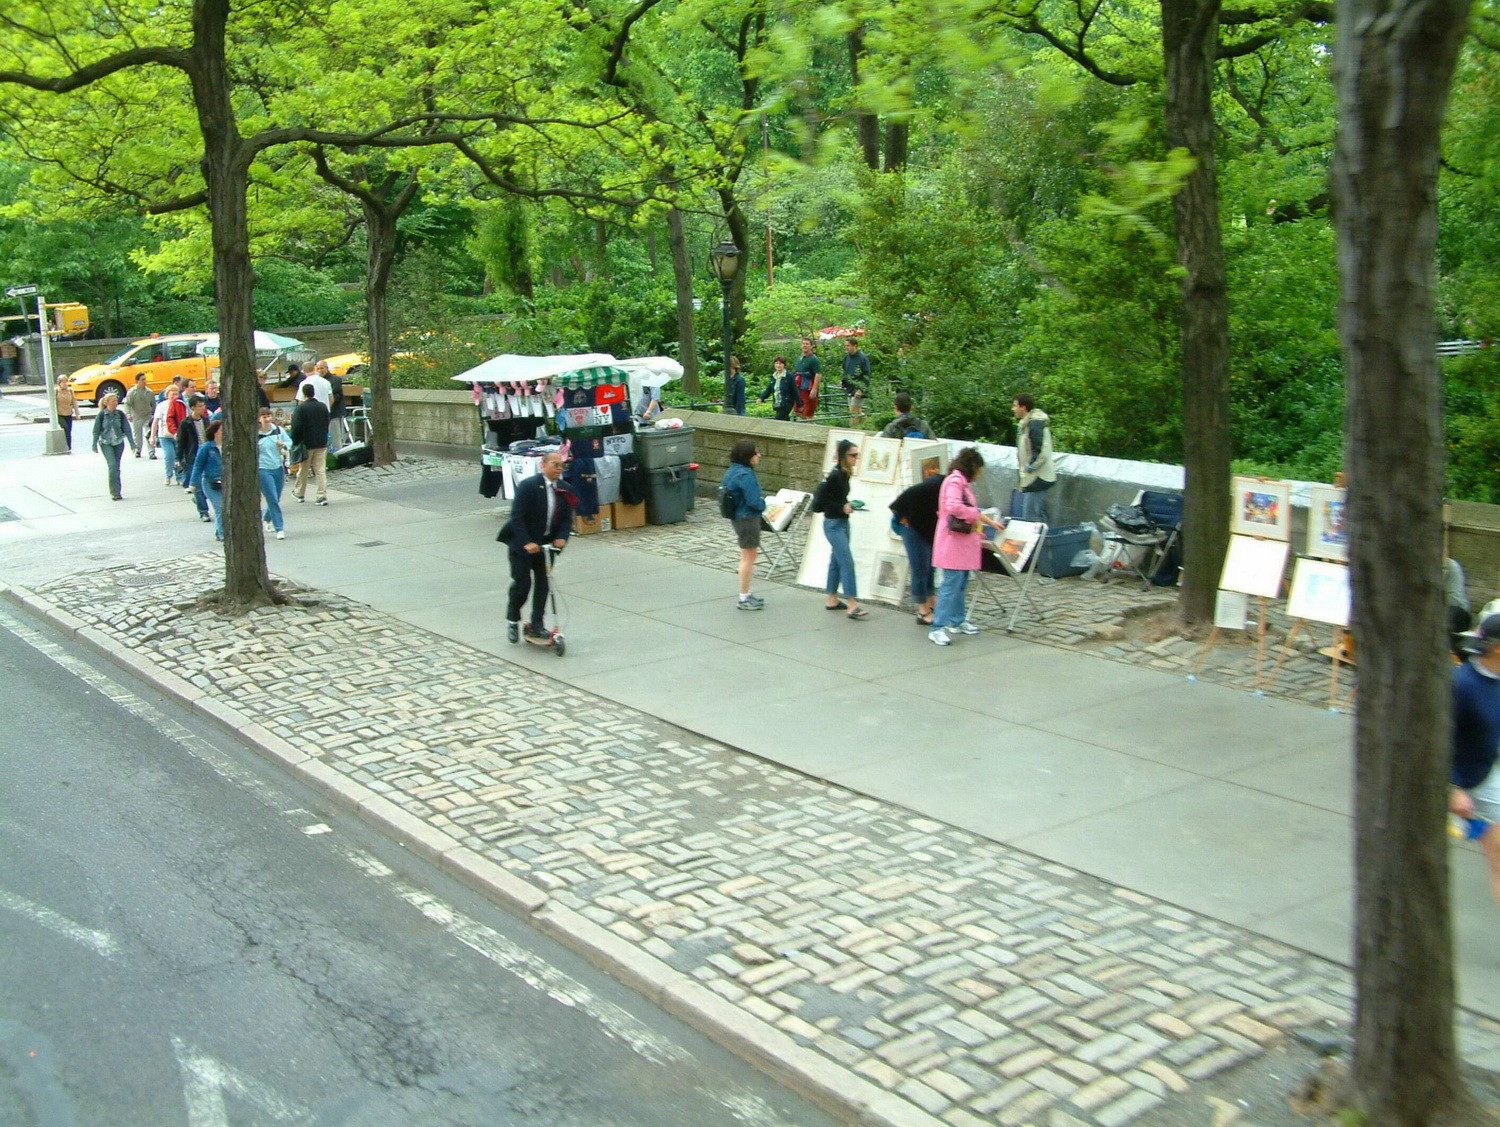 East Side Central Park